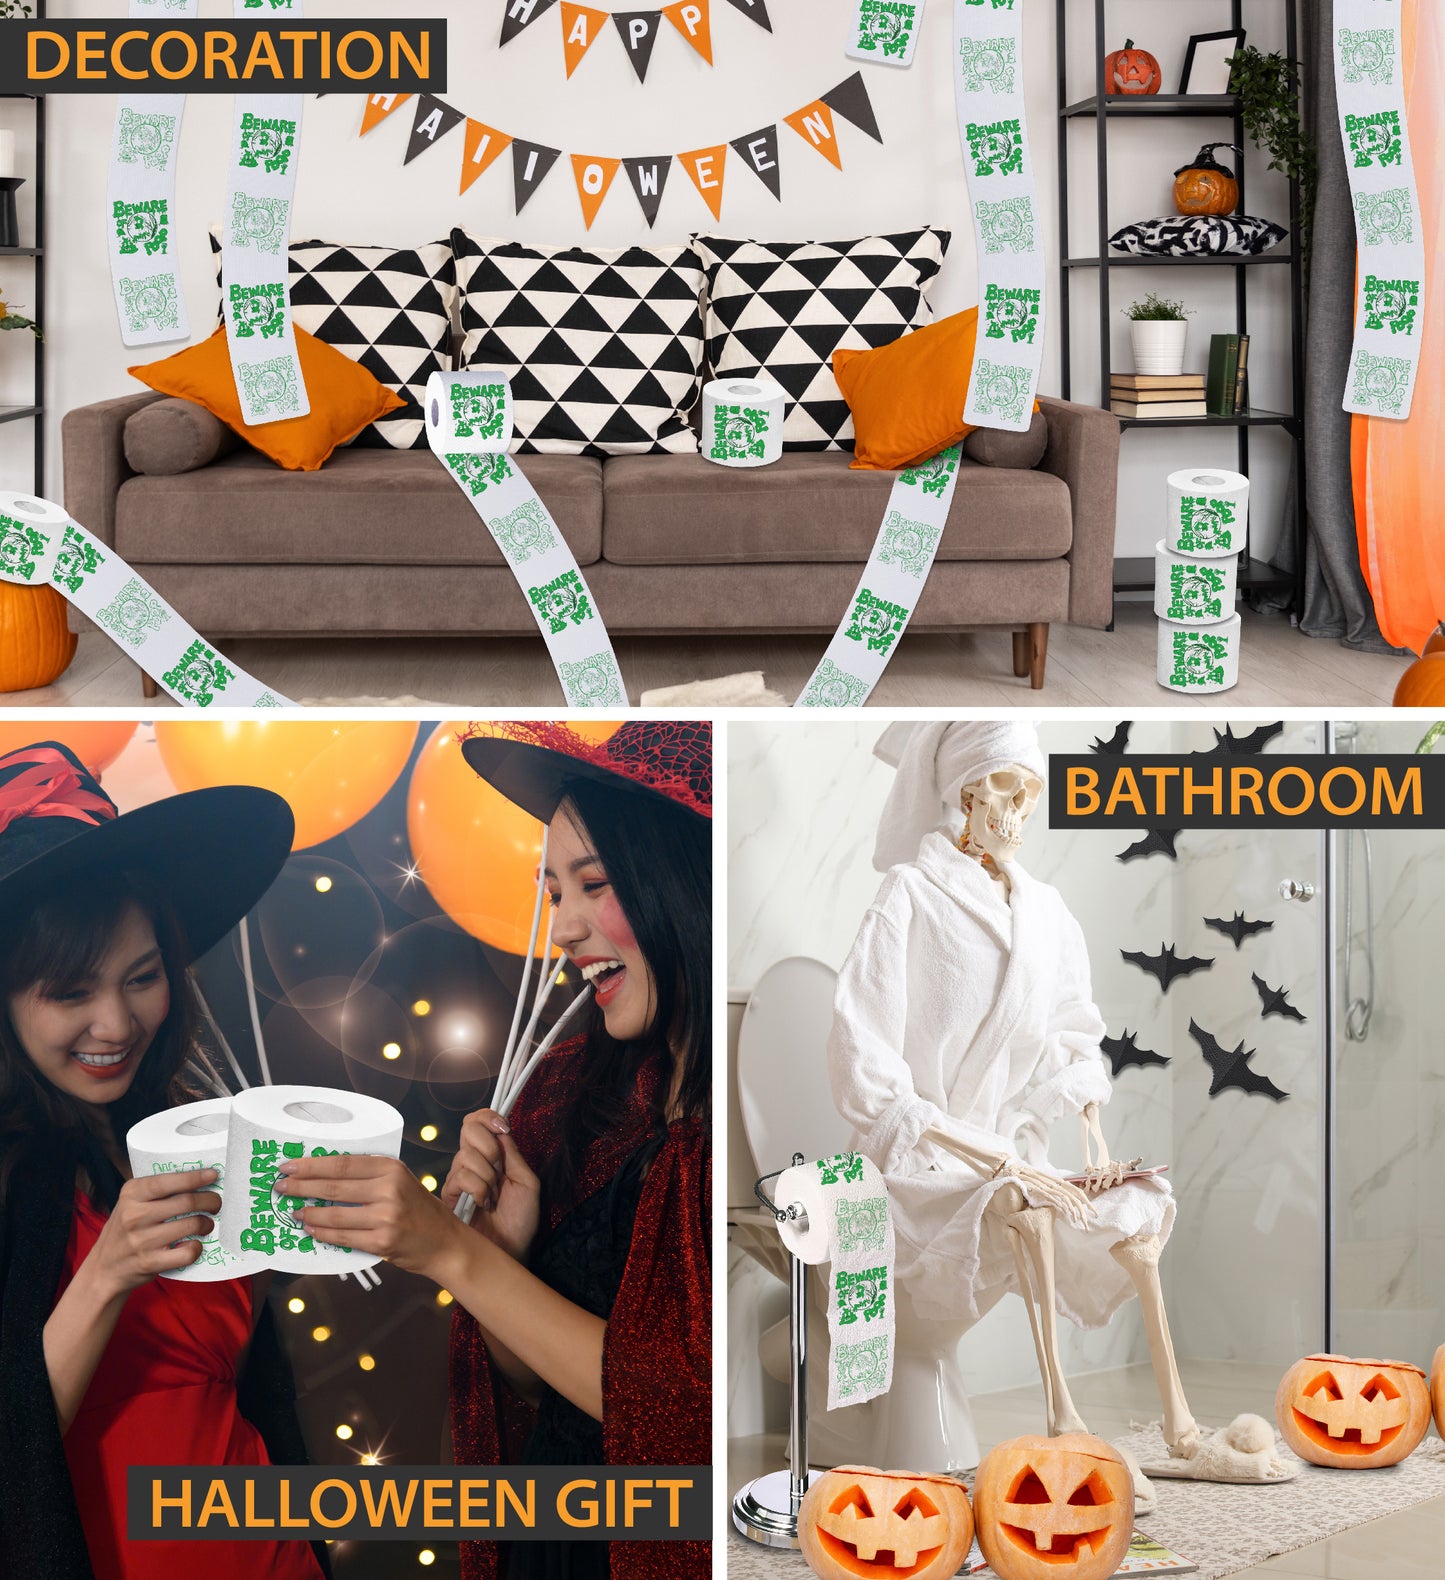 Printed TP Halloween Beware of Zombie Poop Printed Toilet Paper – 500 Sheets